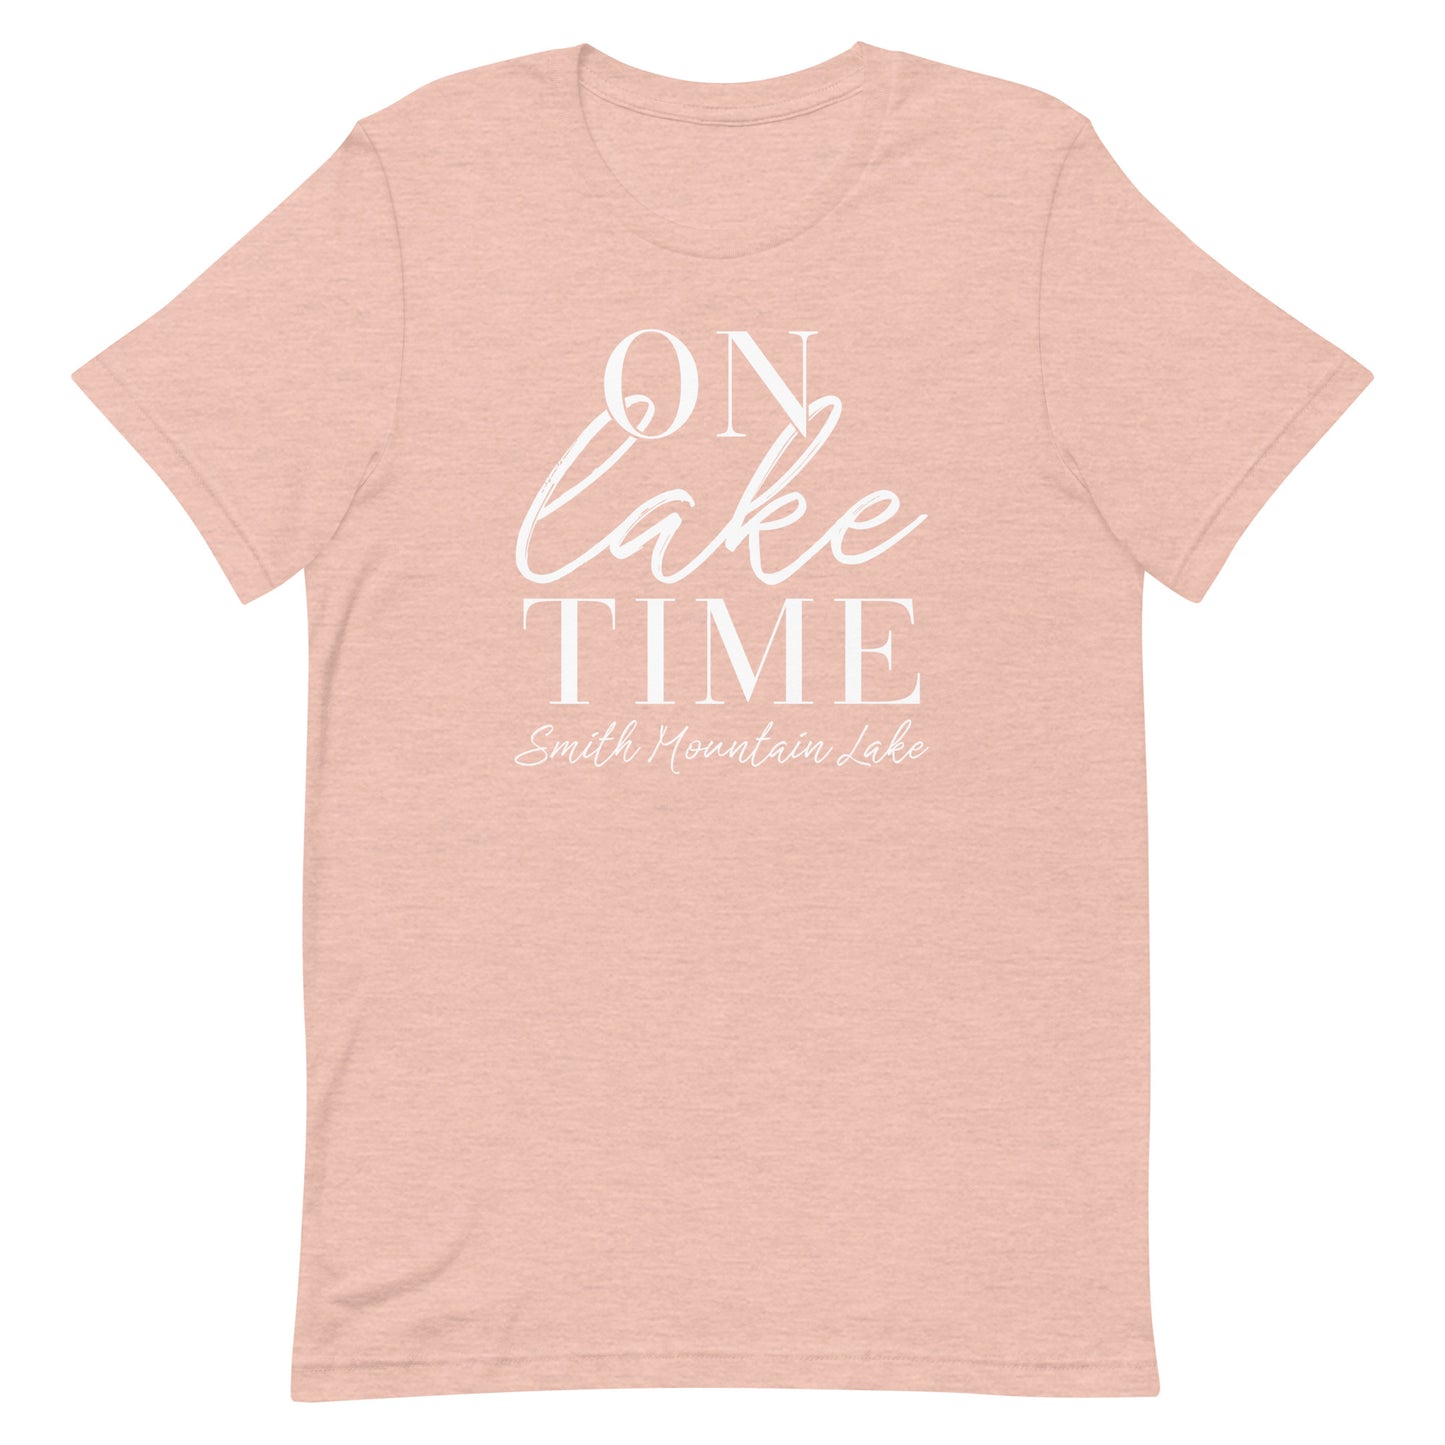 On Lake Time - Smith Mountain Lake, VA Unisex Short Sleeve T-Shirt